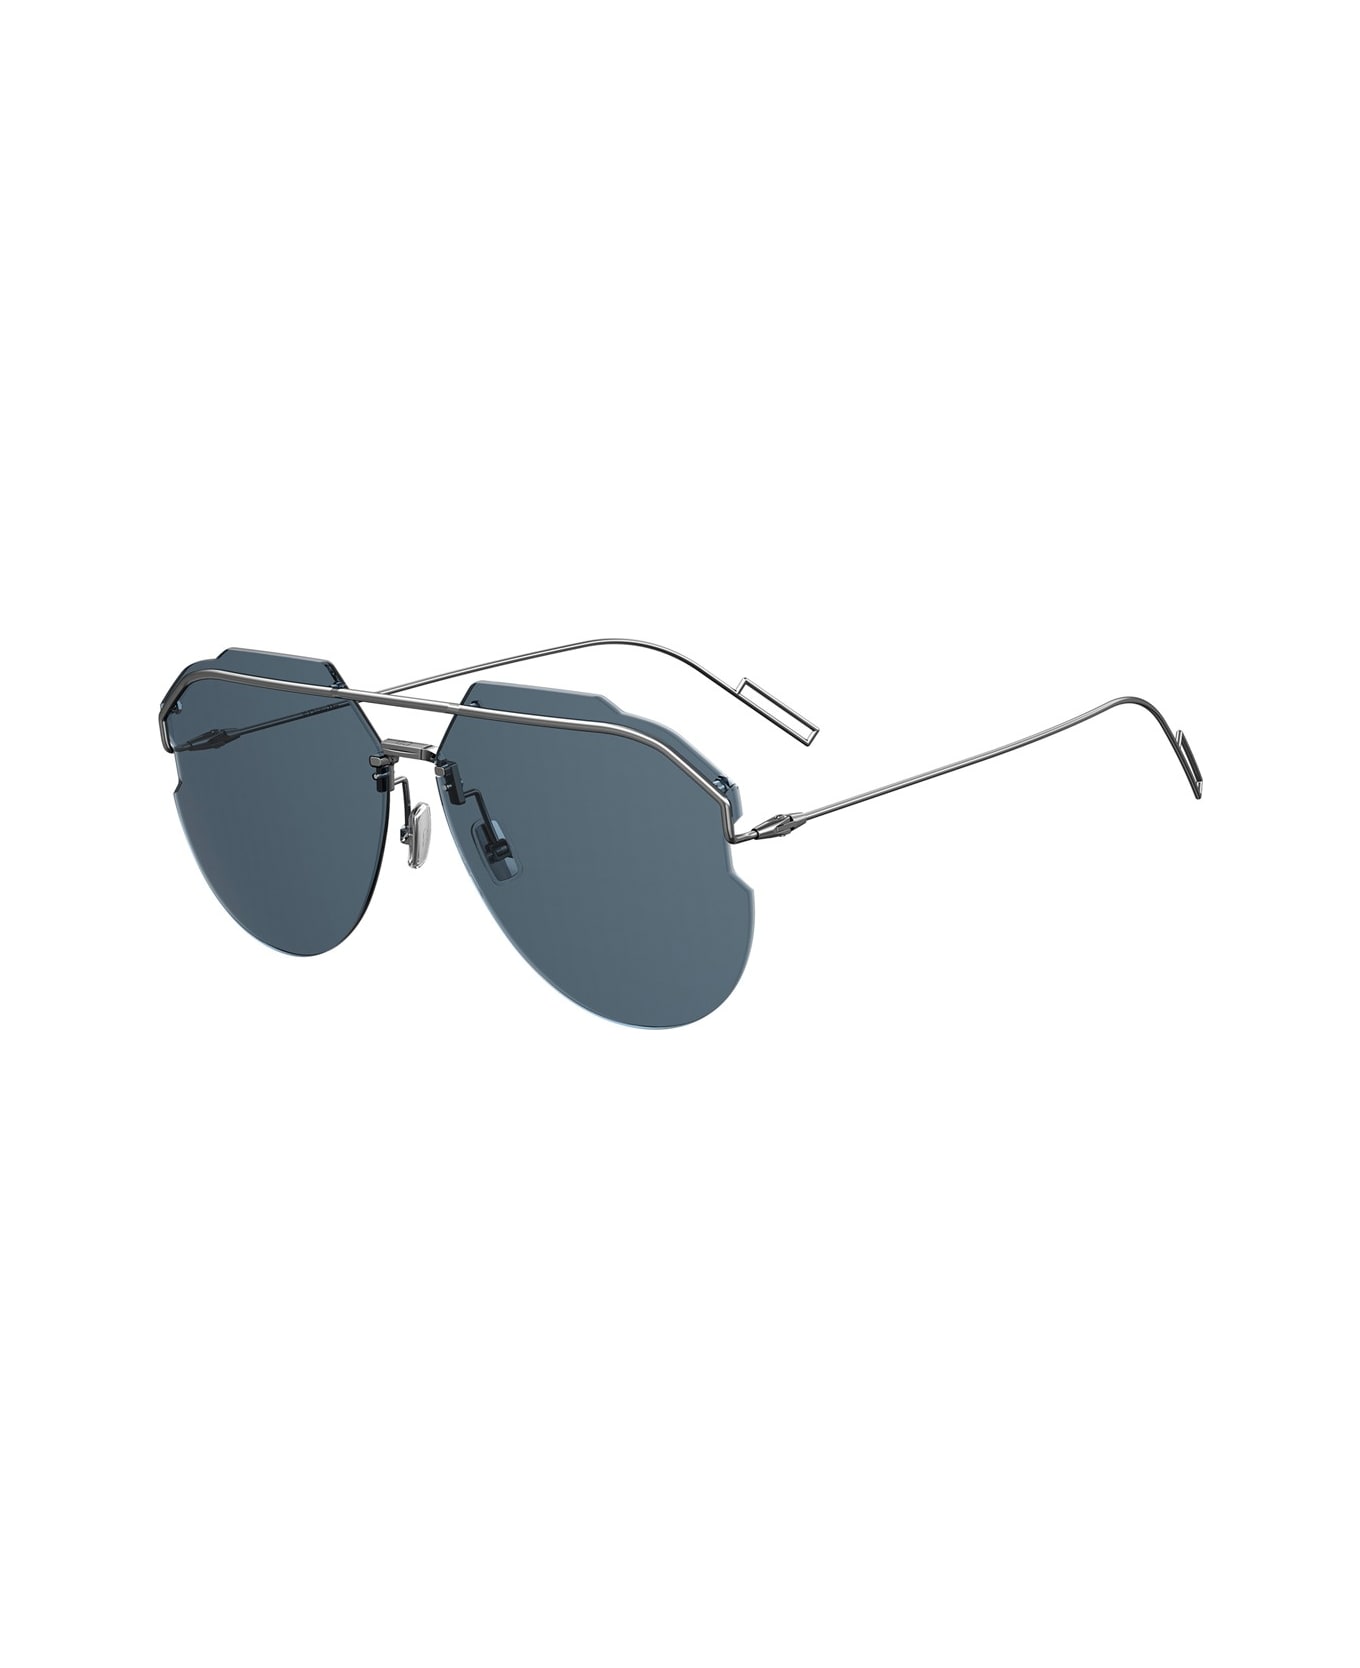 Dior Eyewear Andiorid Sunglasses - Argento サングラス